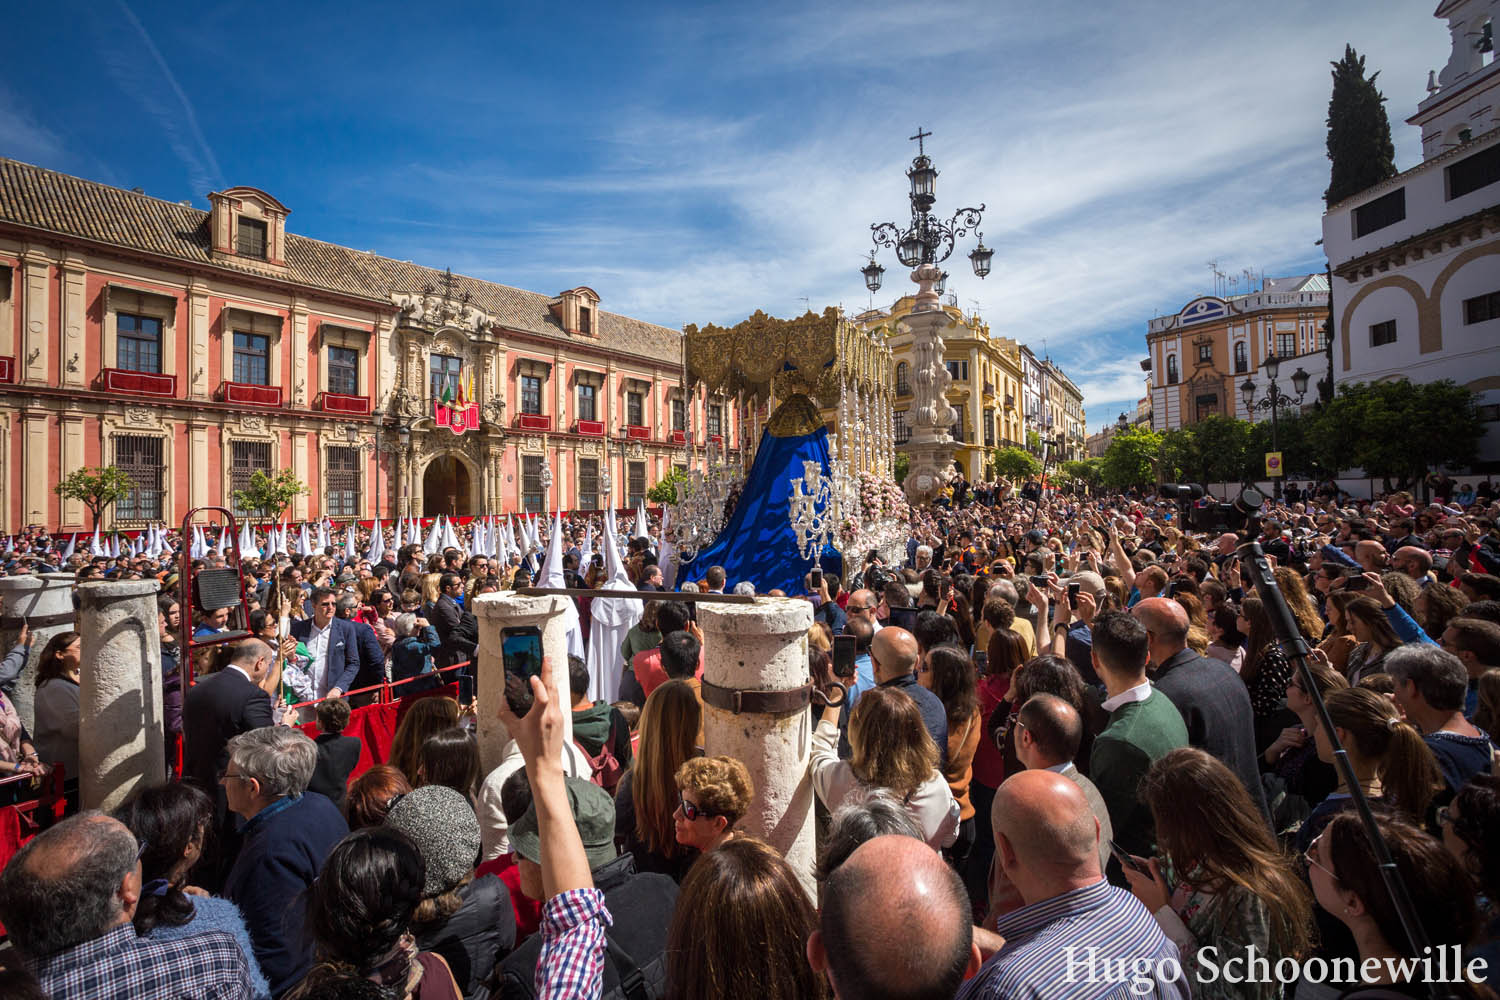 De paso met Maria van broederschap El Resucitado komt uit de kathedraal van Sevilla en gaat langs de menigte op het plein.